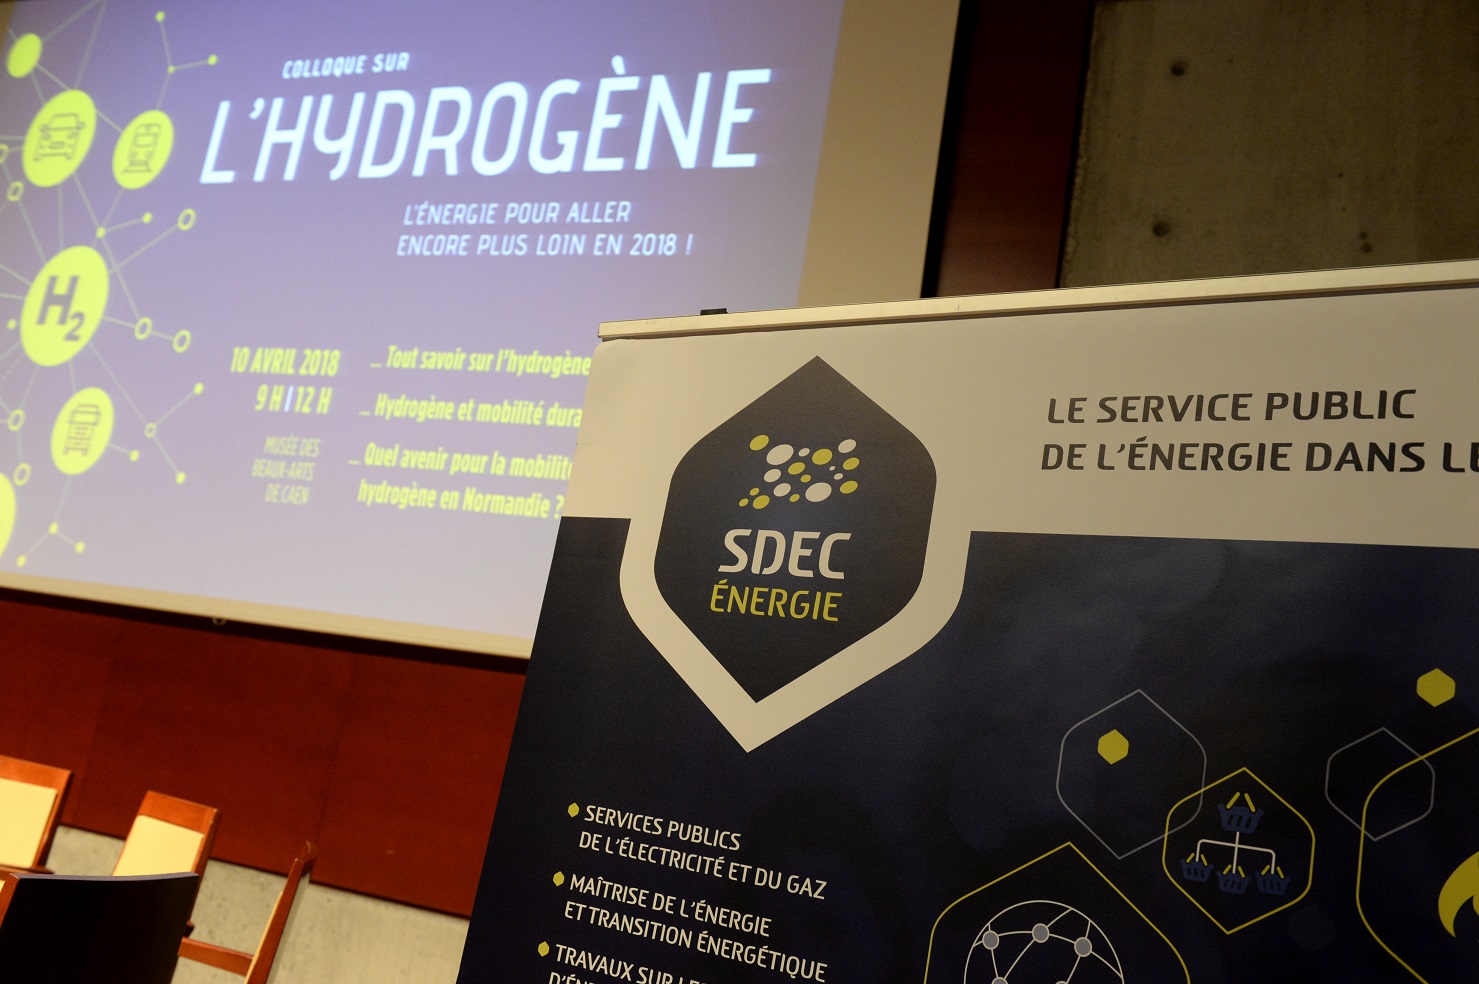  Colloque, l'Hydrogène pour aller encore plus loin en 2018, le mardi 10 avril 2018 à Caen